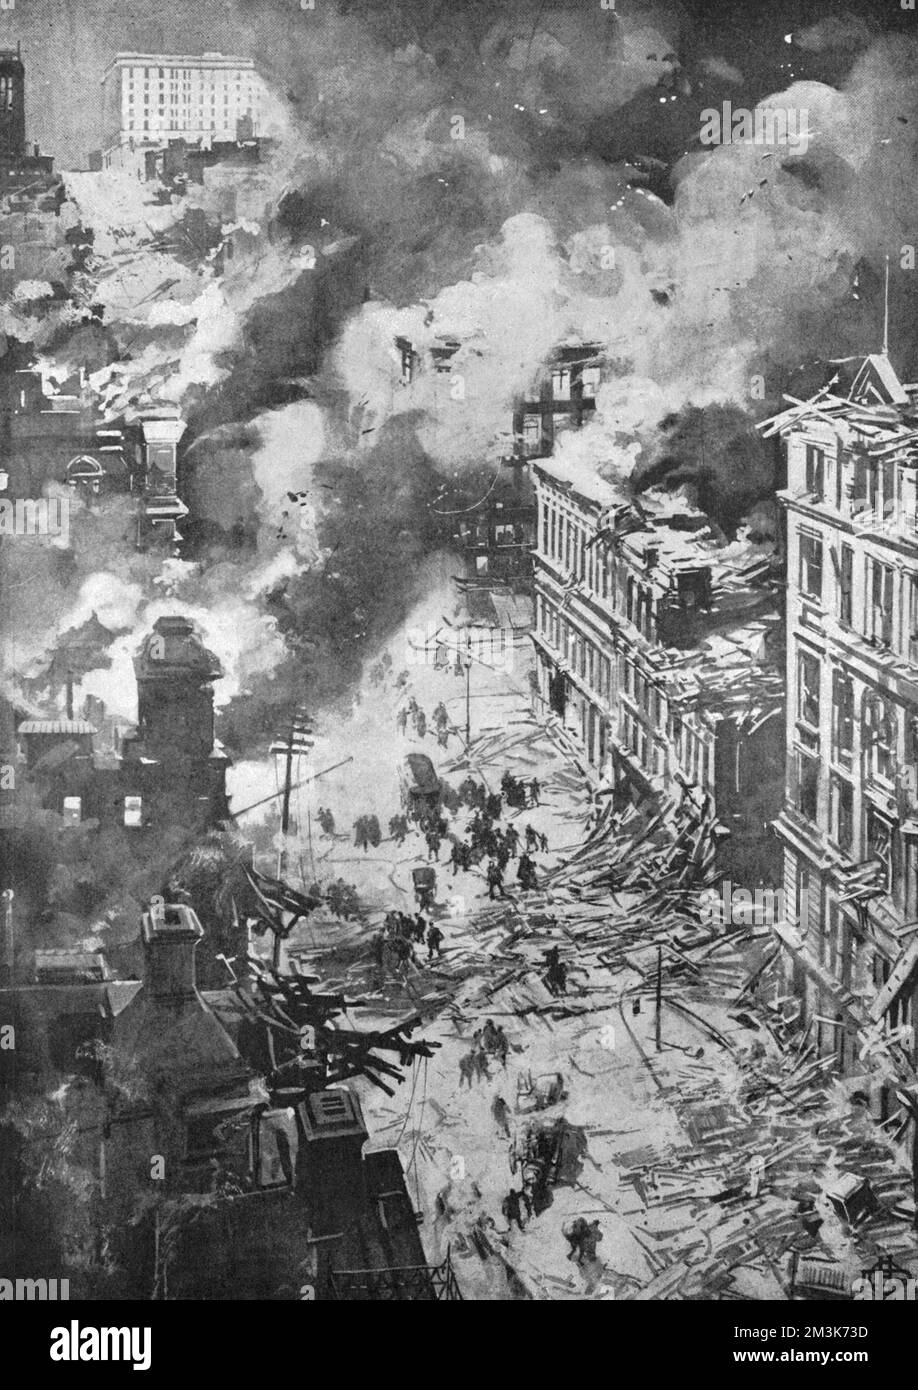 Dessin de l'artiste spécial de 'Leslie's Weekly', un papier pictural américain, représentant l'épave de California Street. La grande avenue était parsemée de débris dispersés par le tremblement de terre et les incendies qui ont suivi ont achevé la ruine des bâtiments brisés. Au loin, on peut voir le nouvel hôtel Fairmount qui a été incendié mais pas détruit. Le tremblement de terre s'est produit le 18th avril 1906 à San Francisco, Californie, États-Unis, qui se trouve à travers la faille de San Andreas. Mesurant 7,9 sur l'échelle de richter, le tremblement de terre et les incendies qui ont suivi ont entraîné la perte de 3000 vies et plus de 3 Banque D'Images